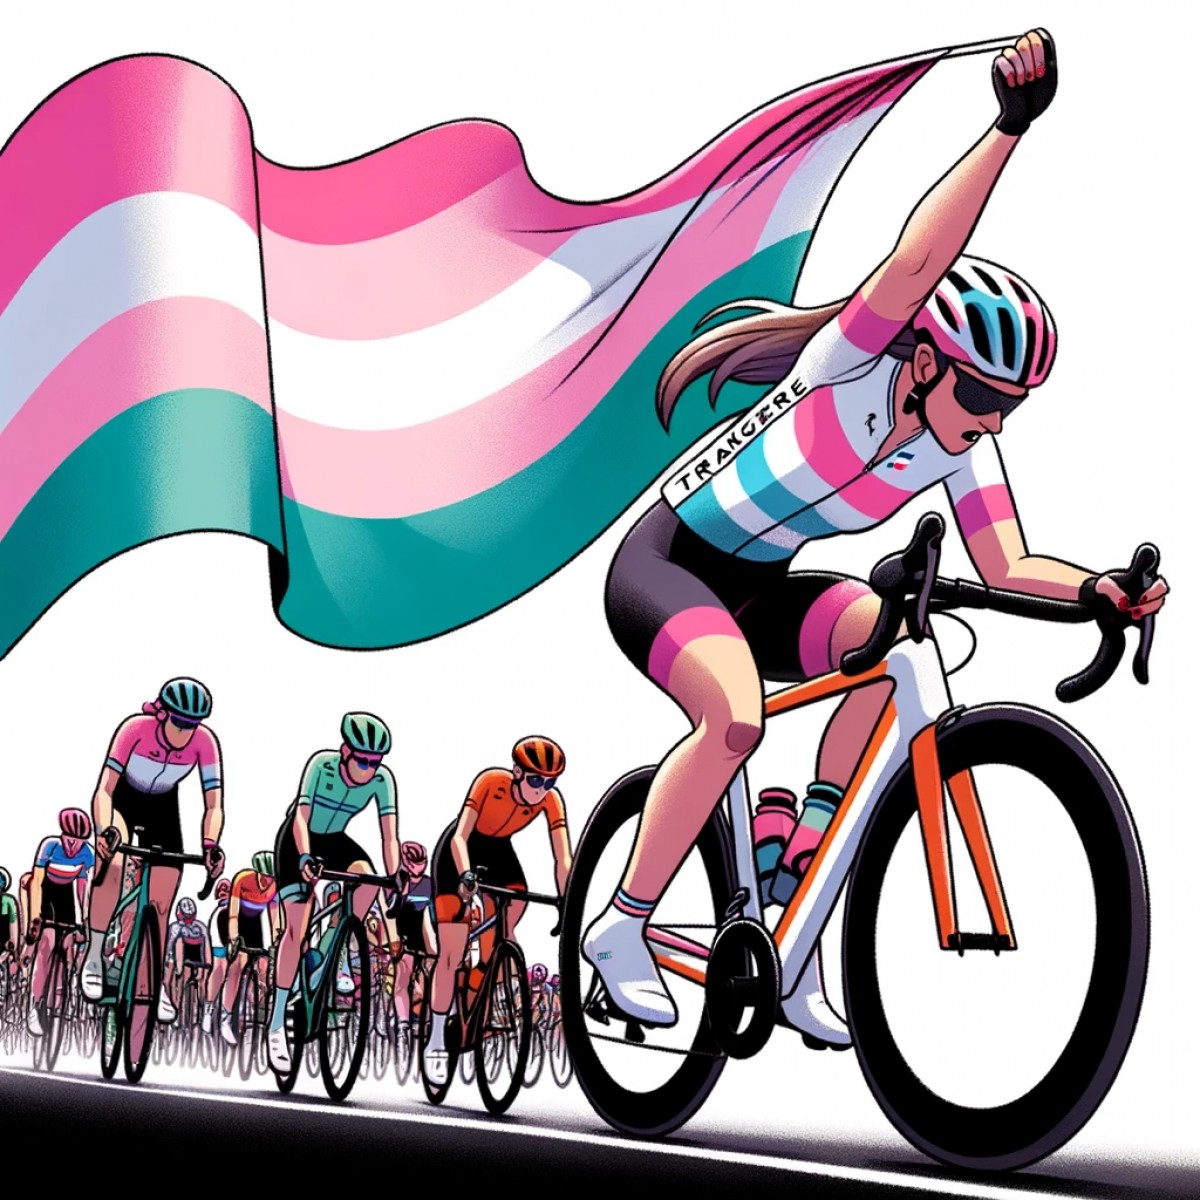 La bataille des athlètes transgenres pour l'équité dans le cyclisme américain